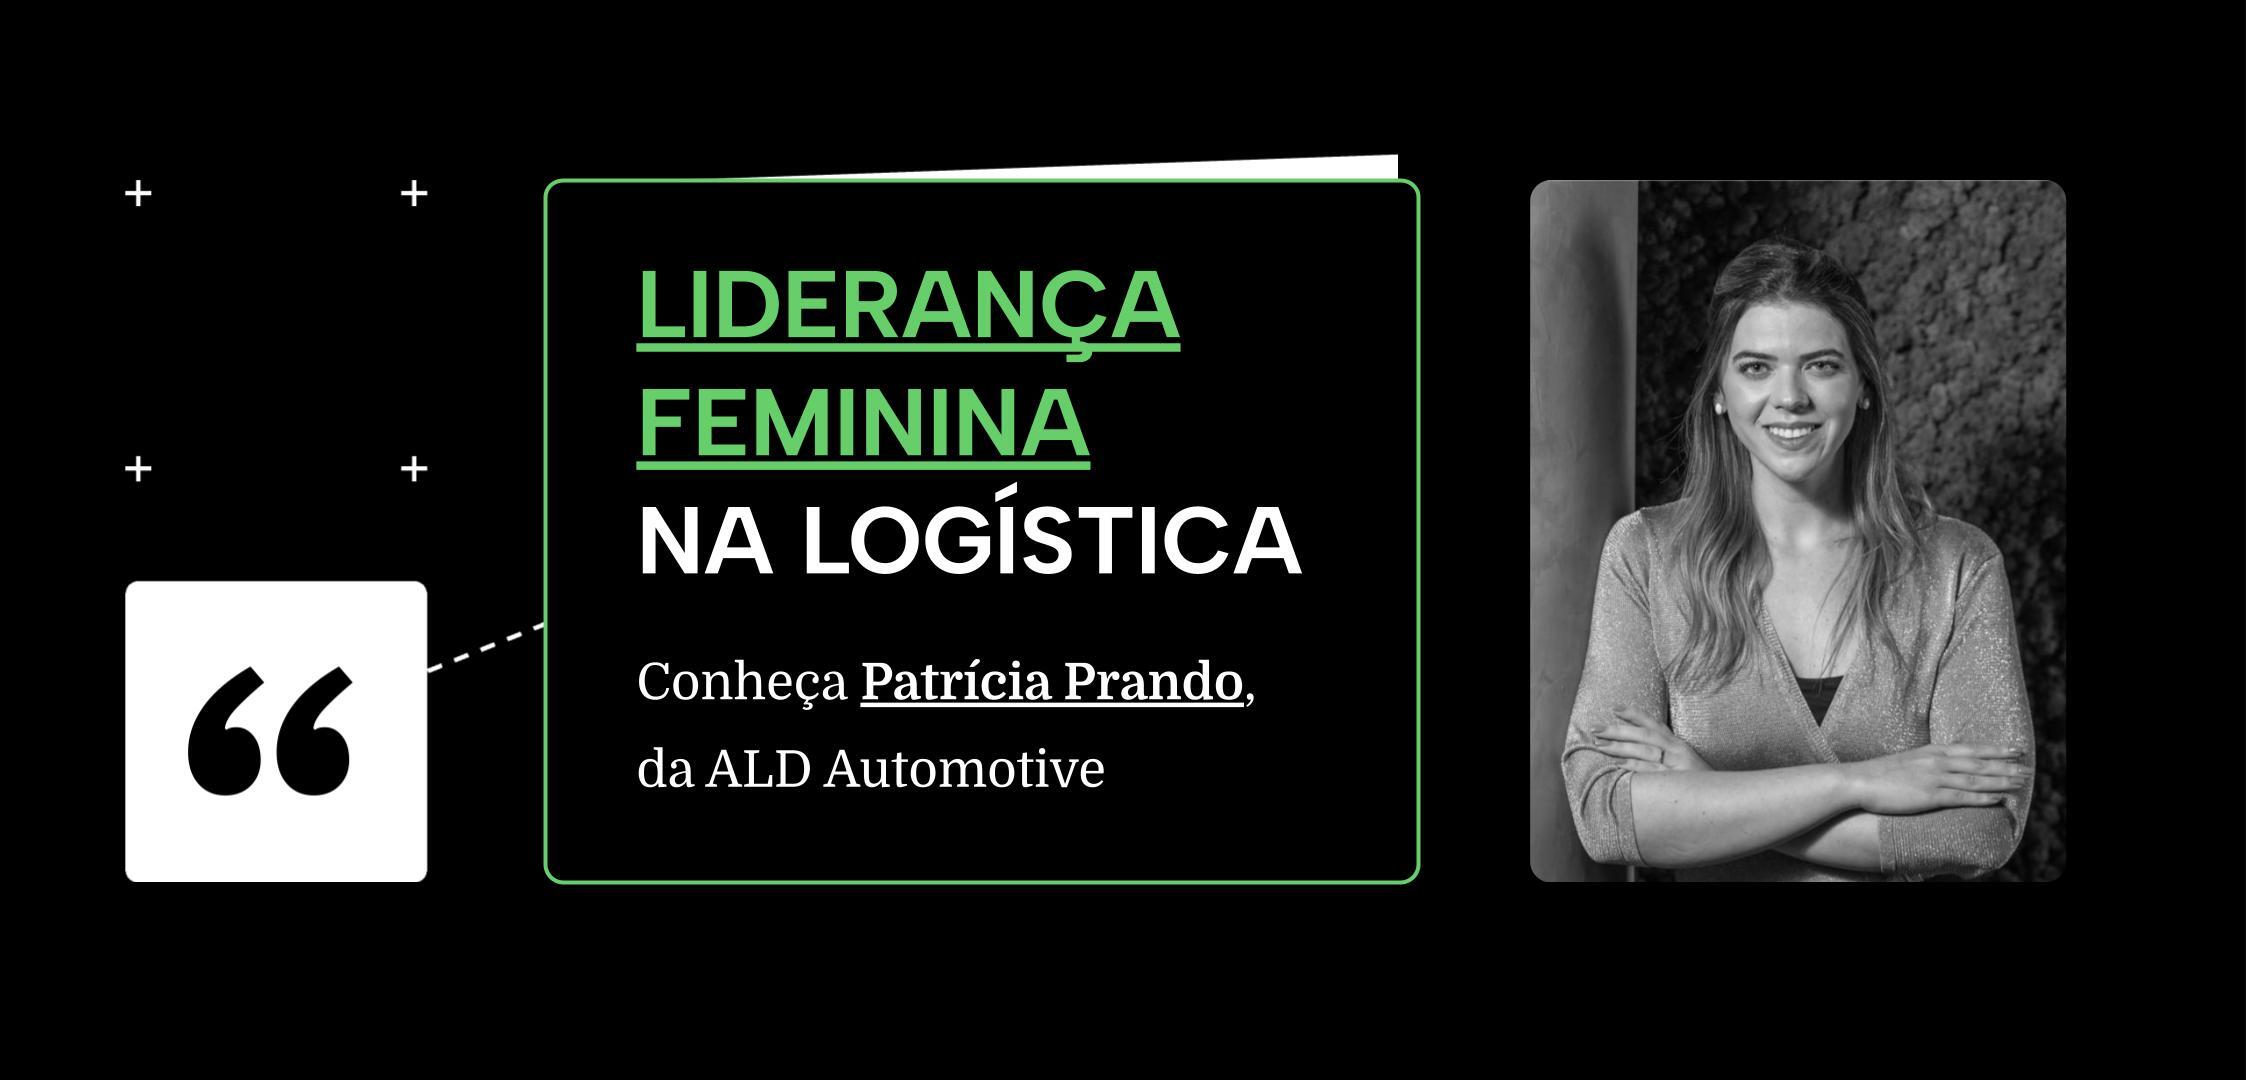 Liderança feminina na logística: conheça Patrícia Prando, da ALD Automotive